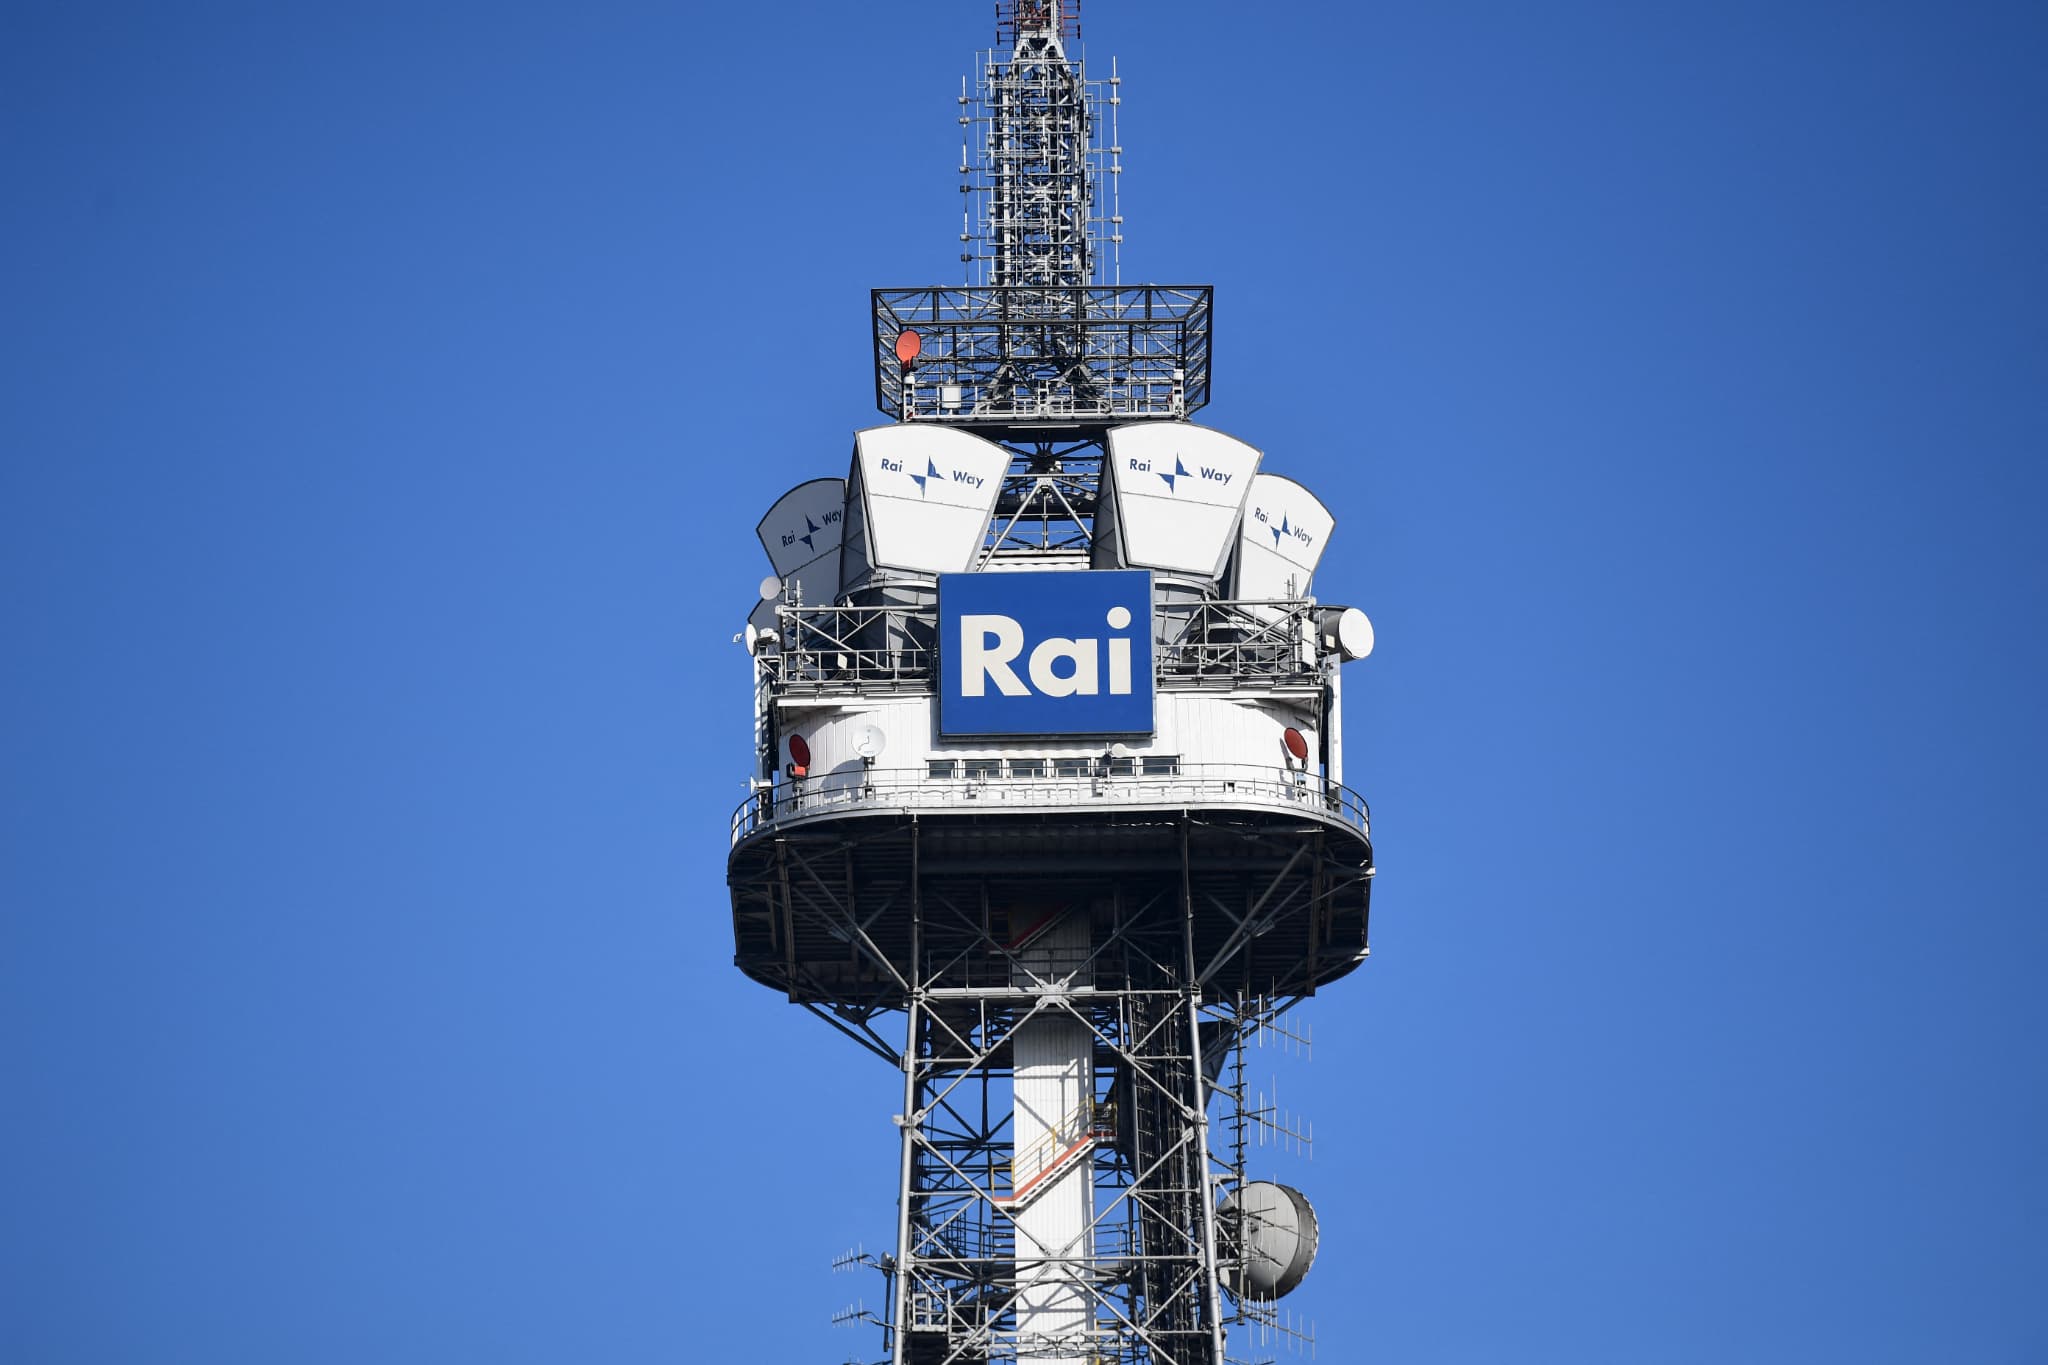 italie: la rai, première radiotélévision publique, en grève pour dénoncer des pressions éditoriales